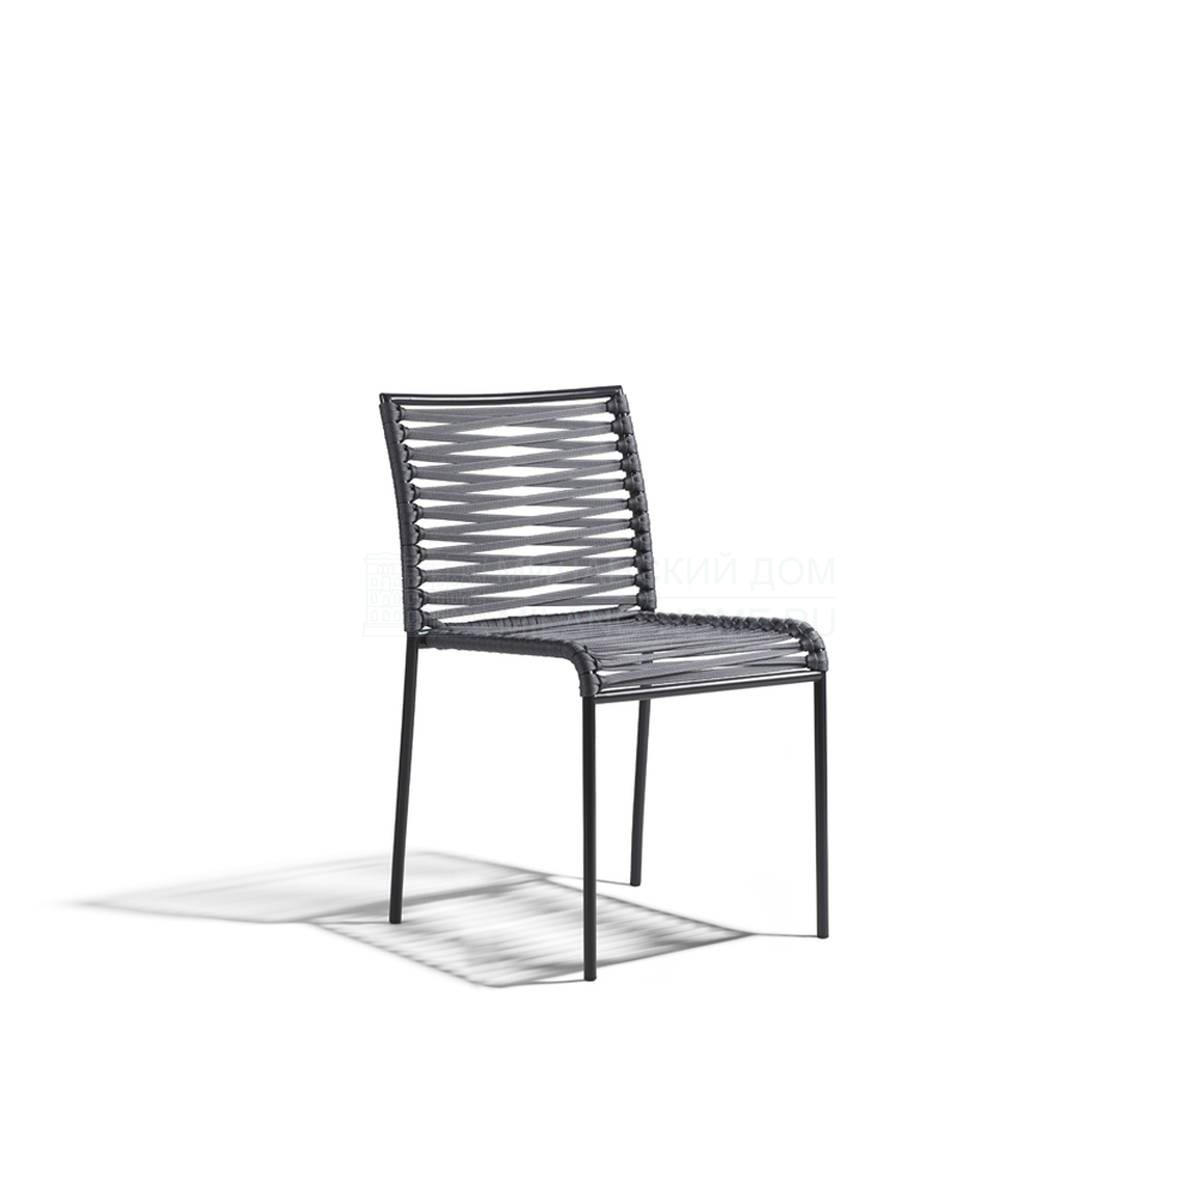 Металлический / Пластиковый стул Aria/864 из Италии фабрики POTOCCO